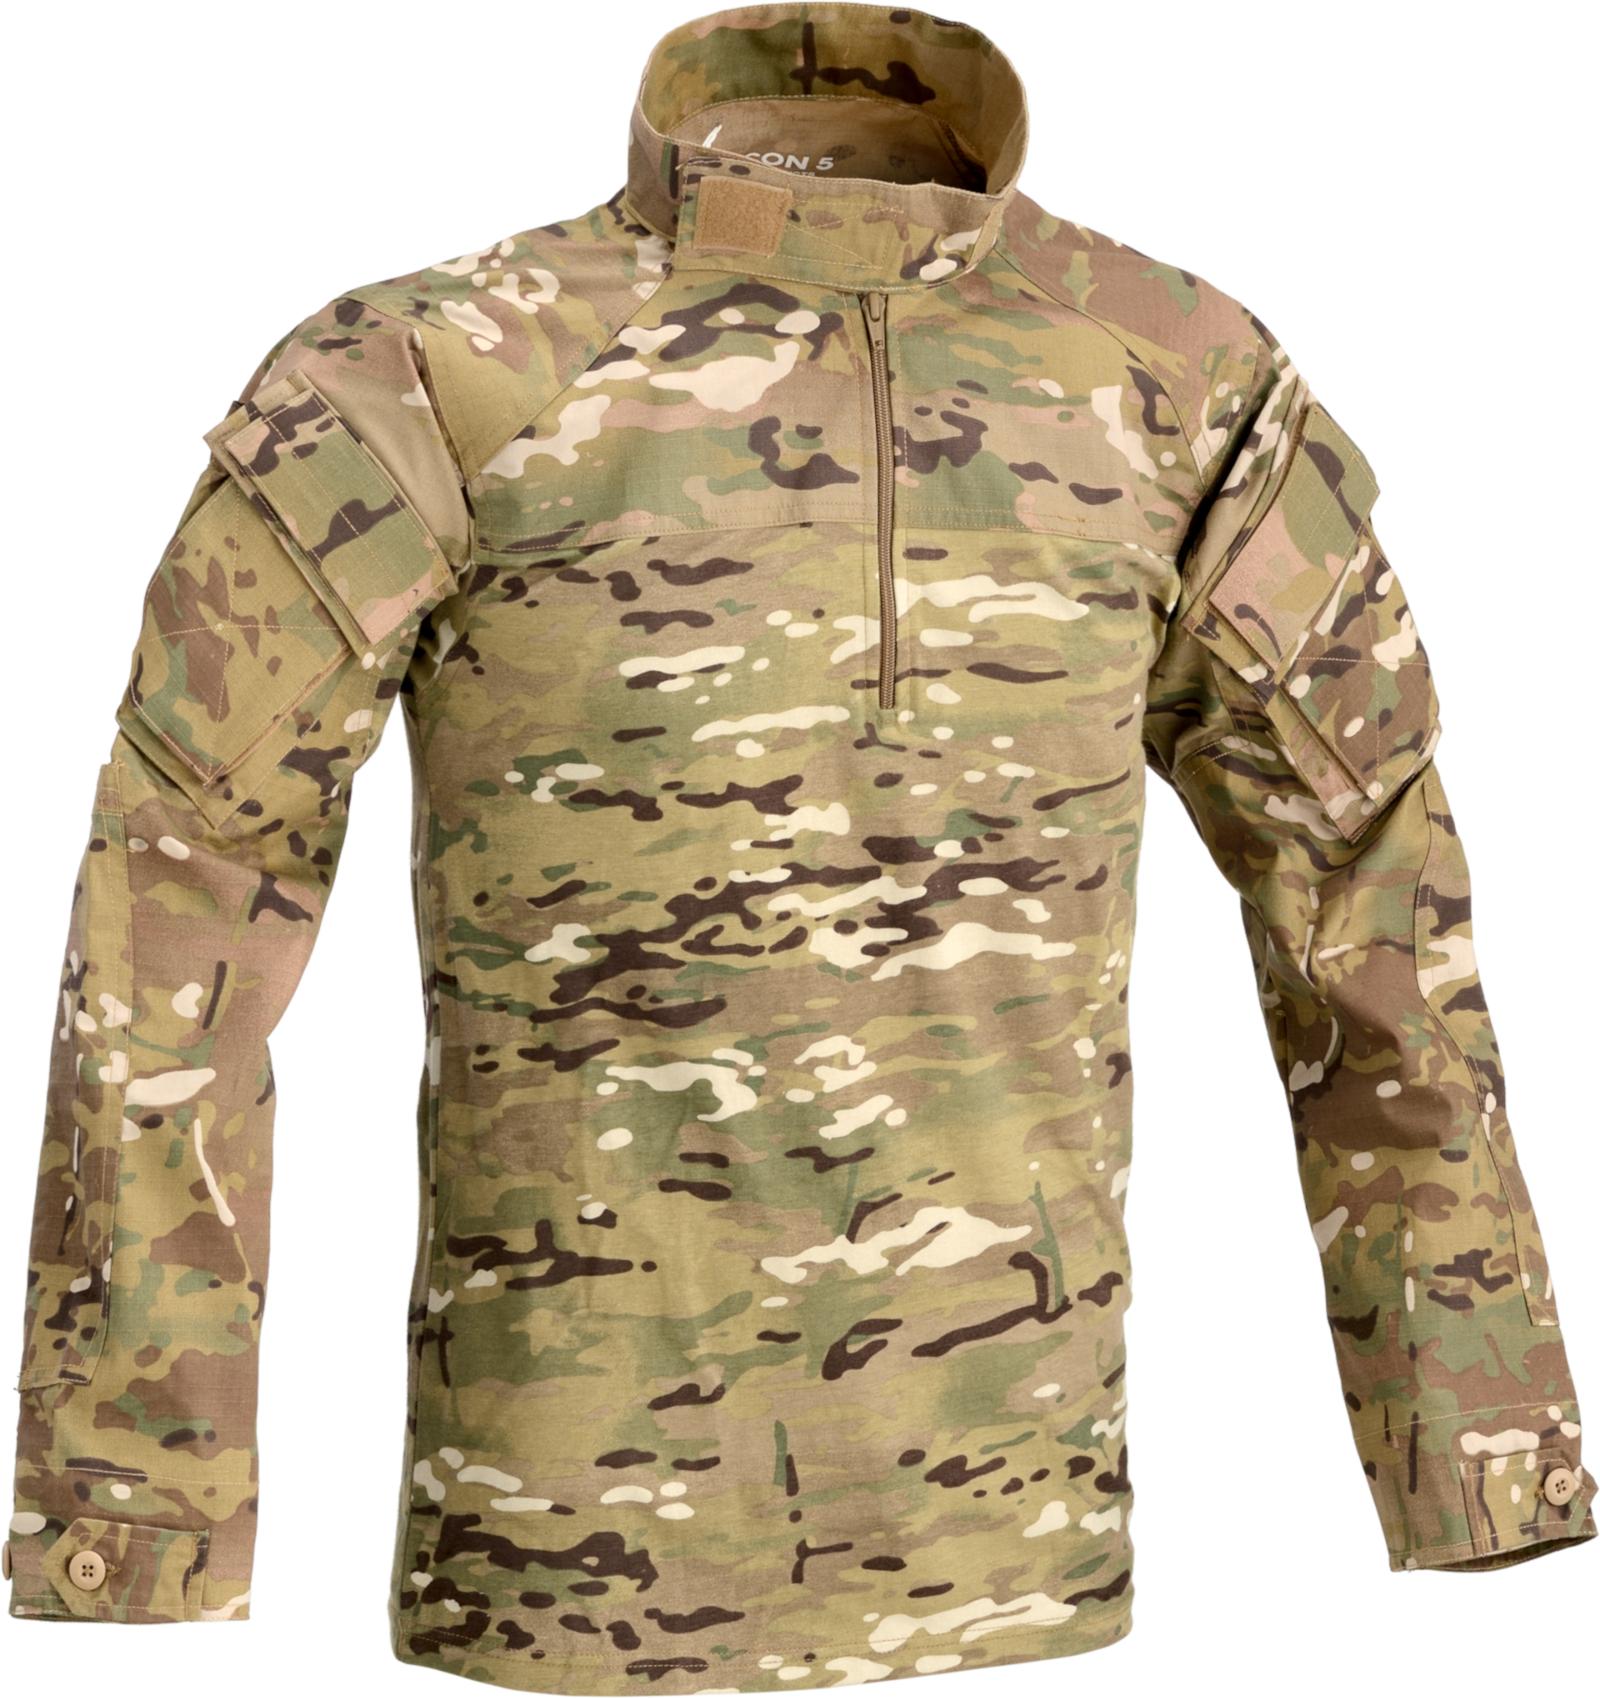 Мультикам хаки. Ubacs MTP. Multicam m2545. Рубашка Combat Shirt облегчённая MTP. Defcon 5 Dragonfly Tactical Jacket Multicamo.